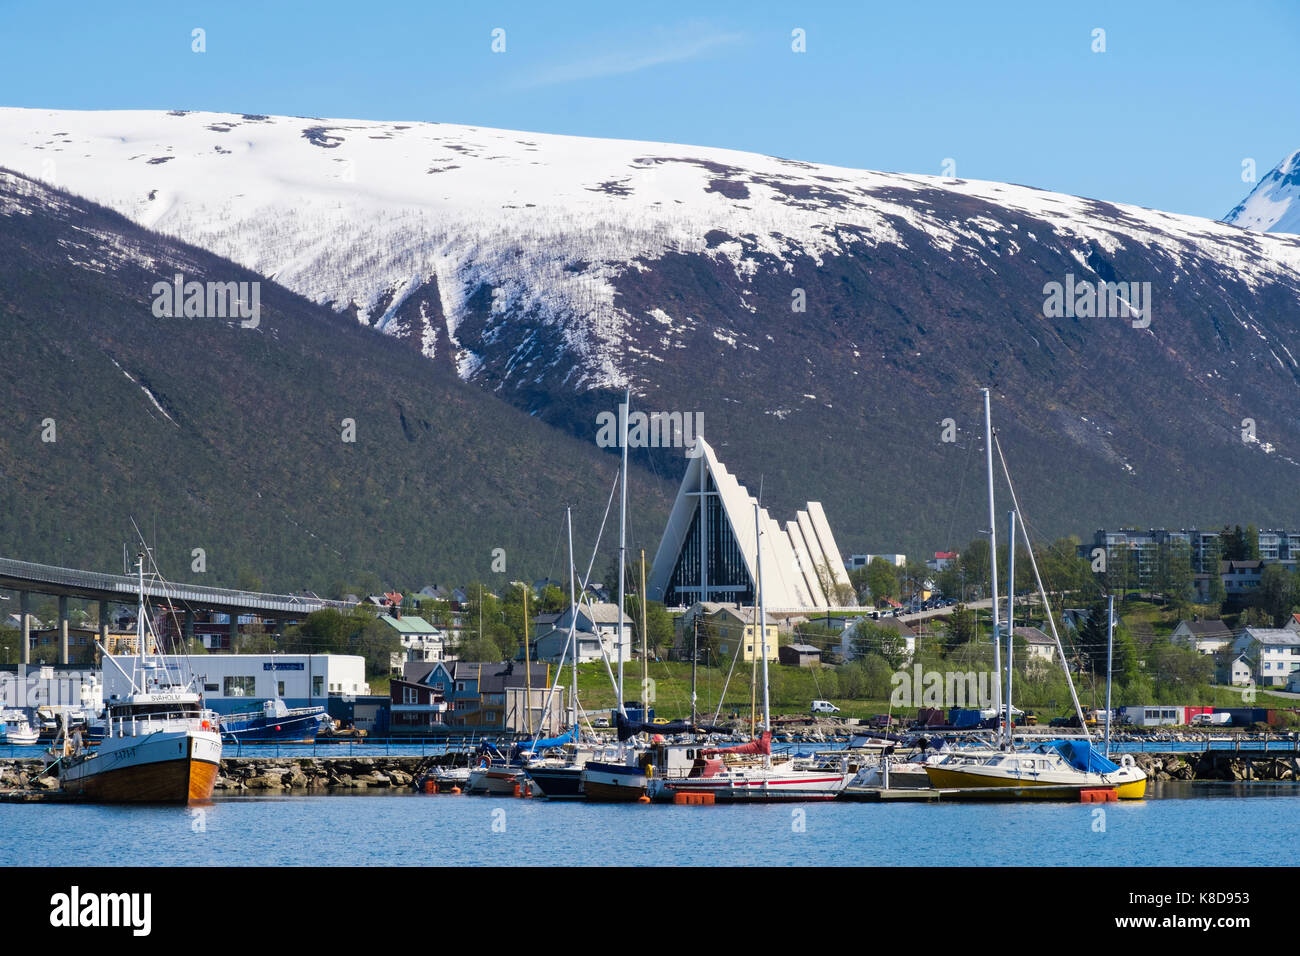 Vue d'ensemble des bateaux amarrés dans le port de la cathédrale arctique sur le continent en été. Tromso, Troms, Norvège, Scandinavie Banque D'Images